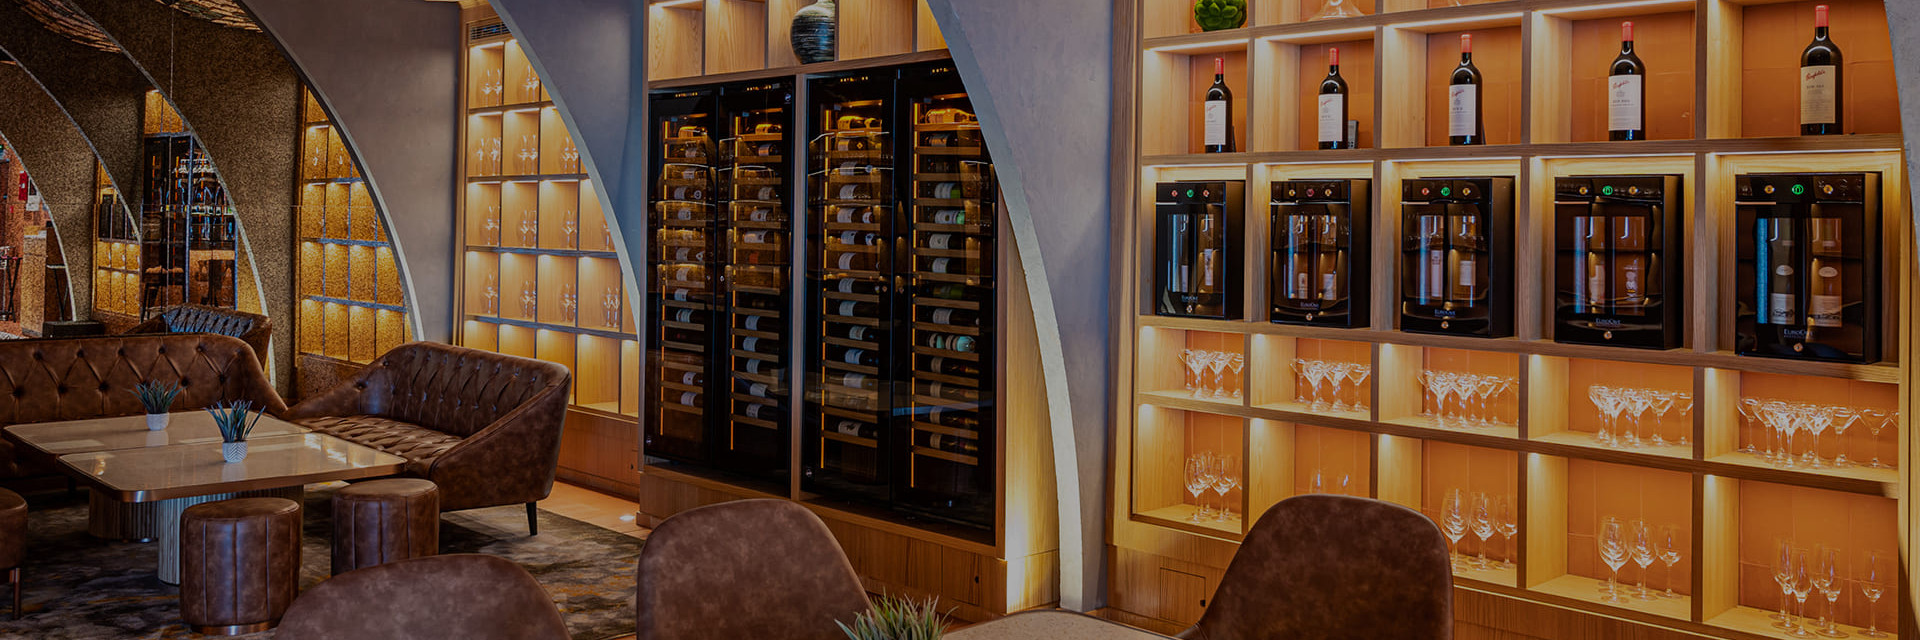 Installation de caves à vin Inspiration et de bars à vin EuroCave dans le restaurant PAPA à Dubaï.